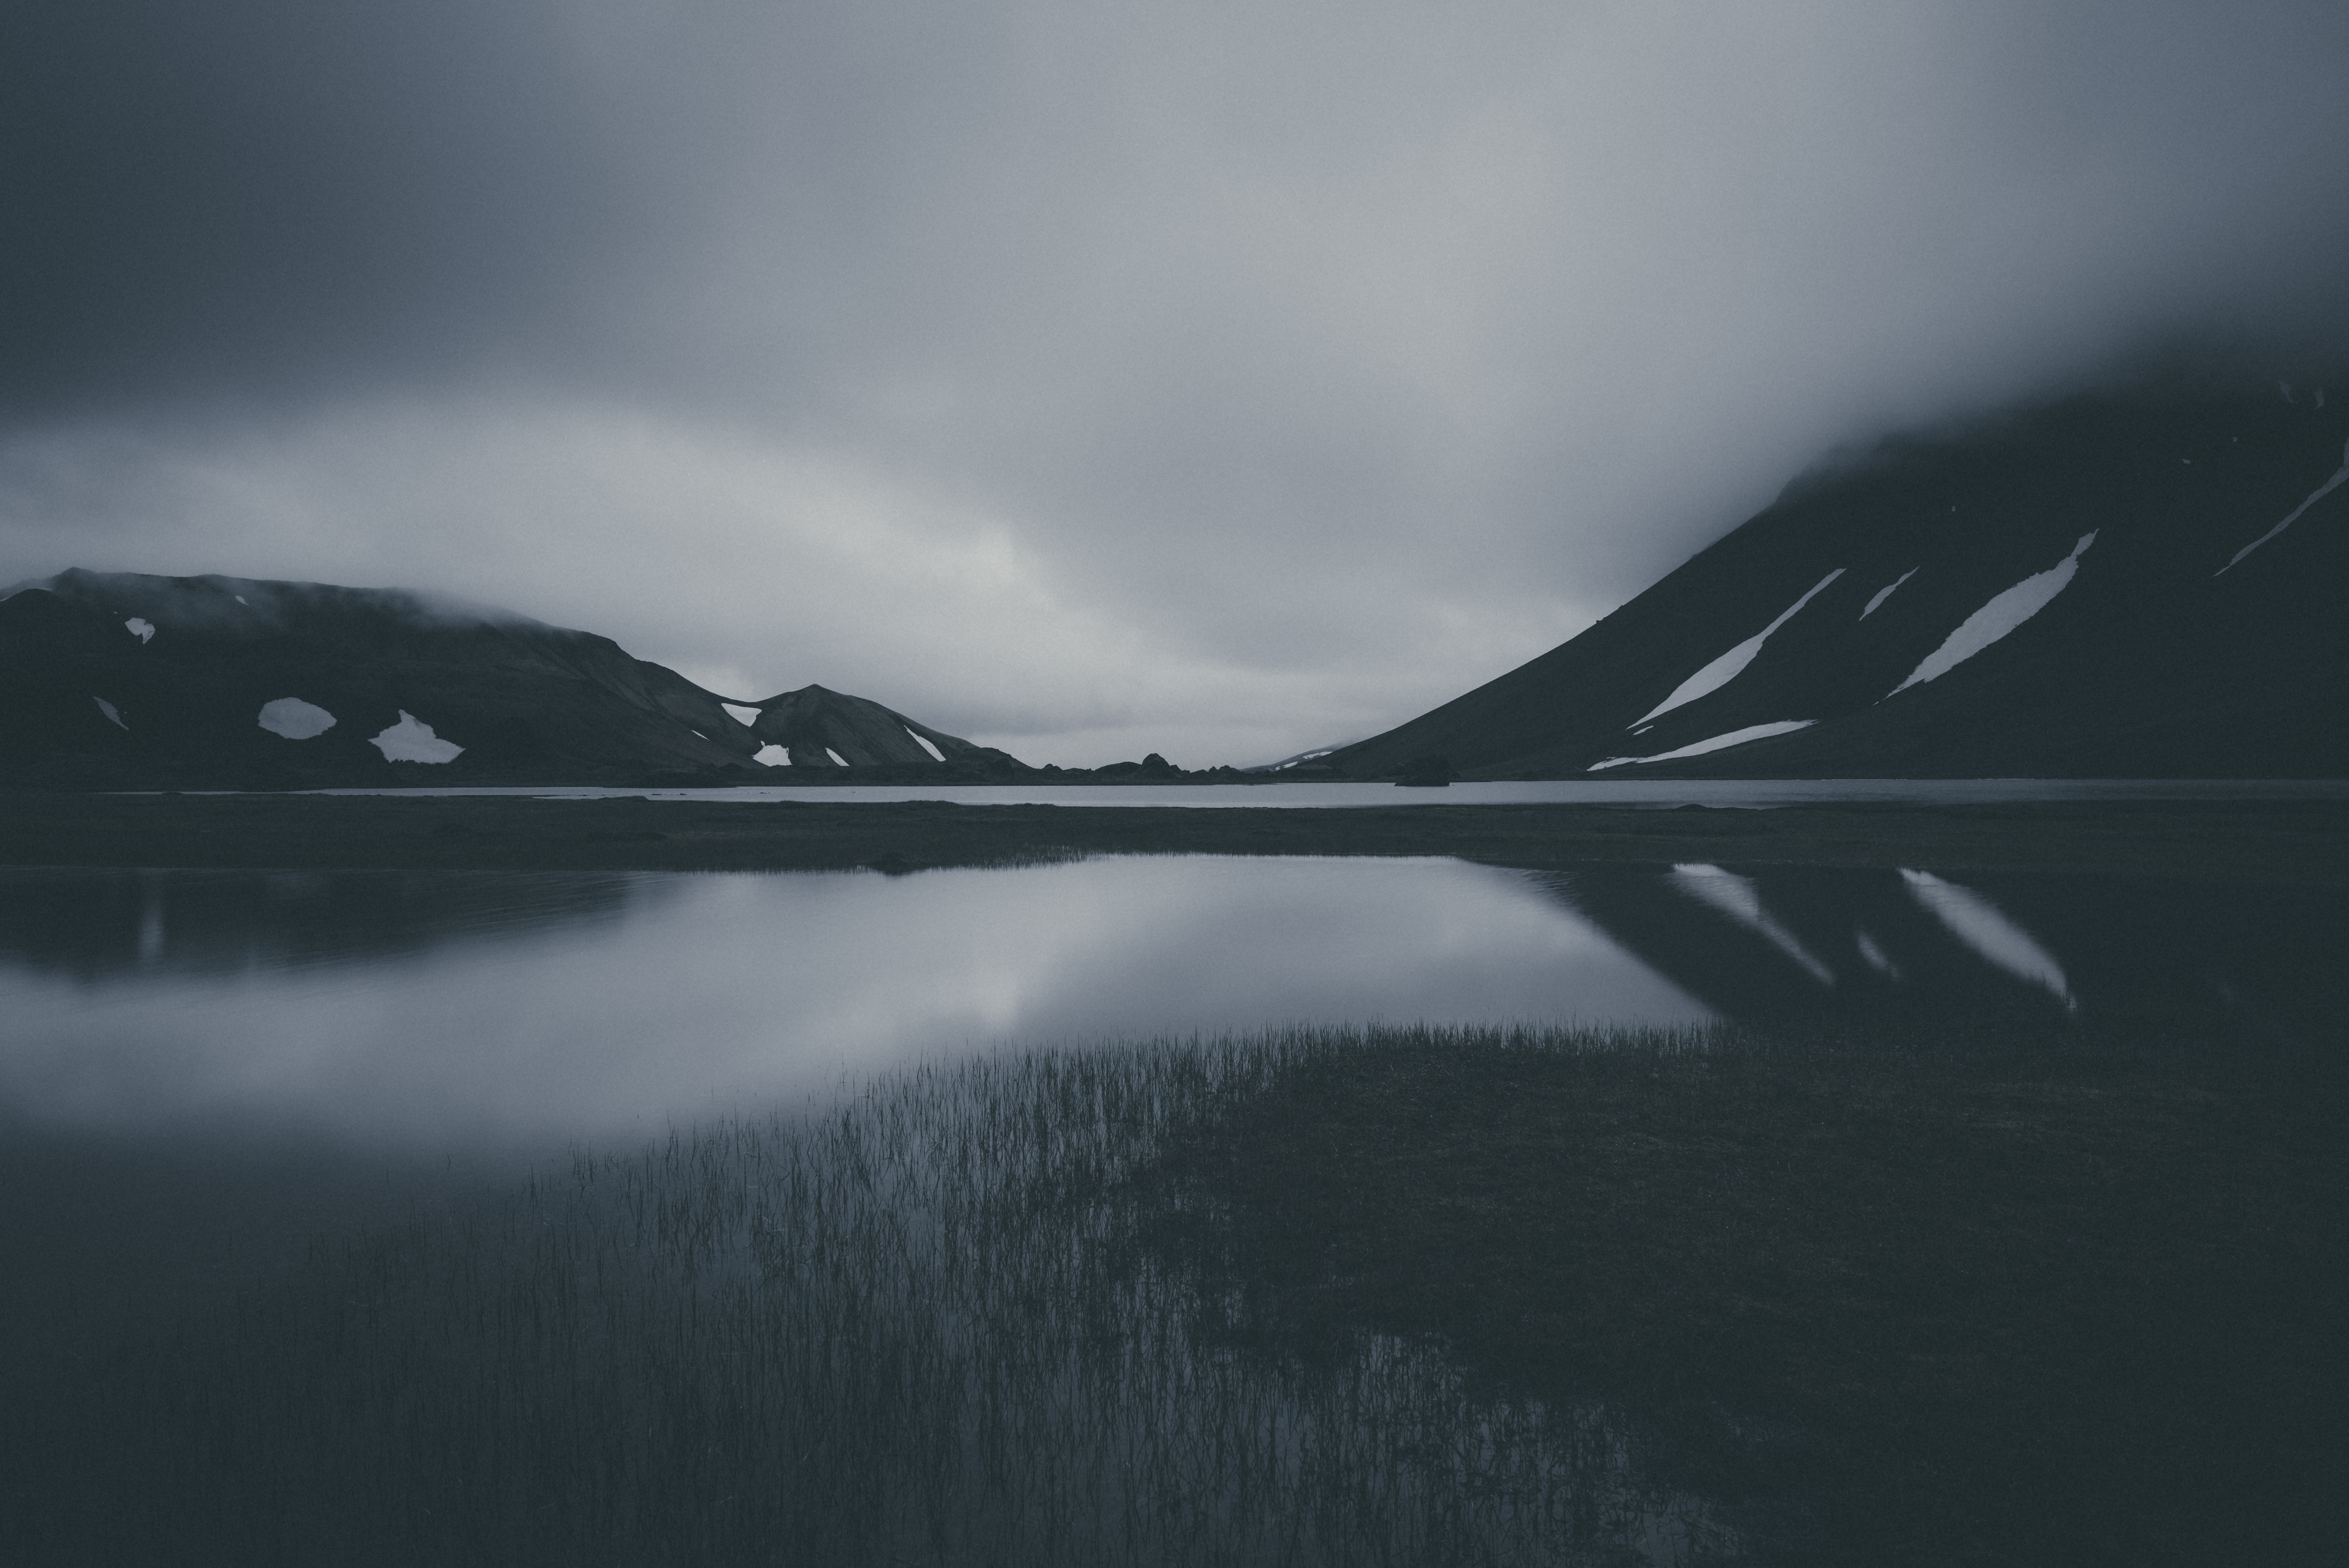 bw, gloomy, dark, mountains, lake, chb, gloomily phone background